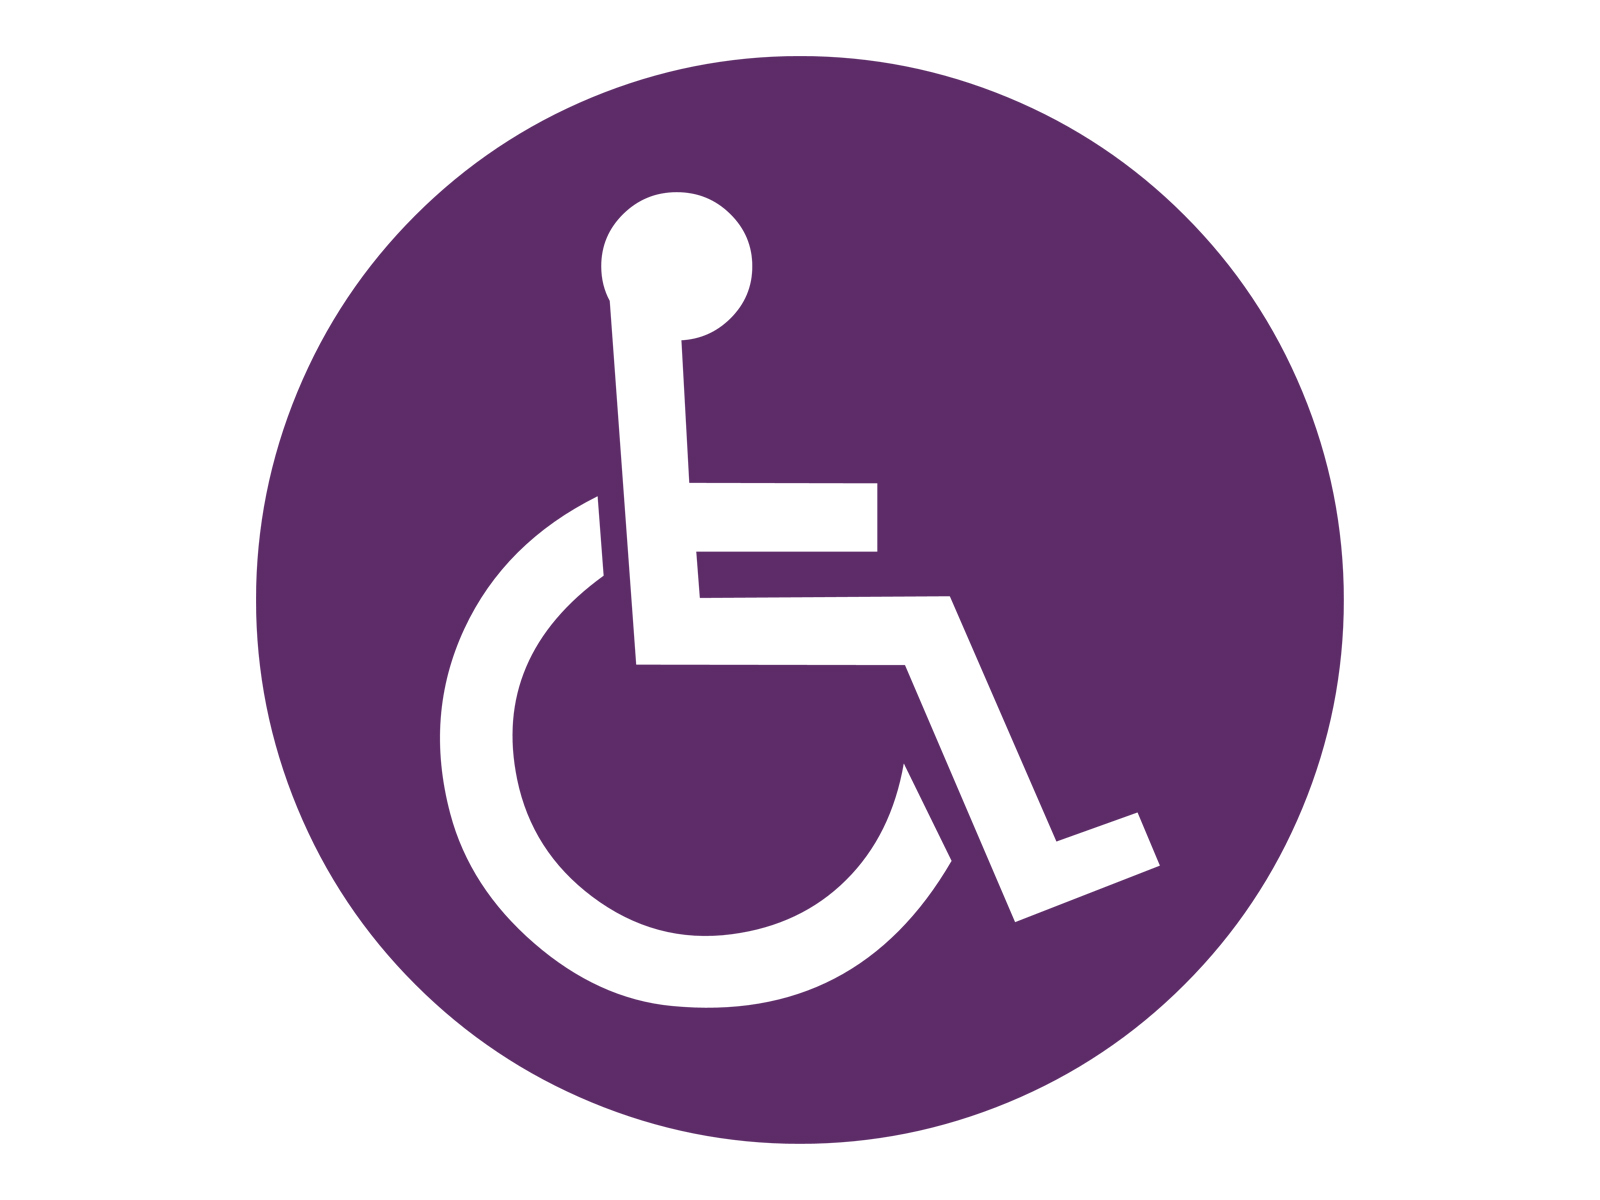 handicap symbol png